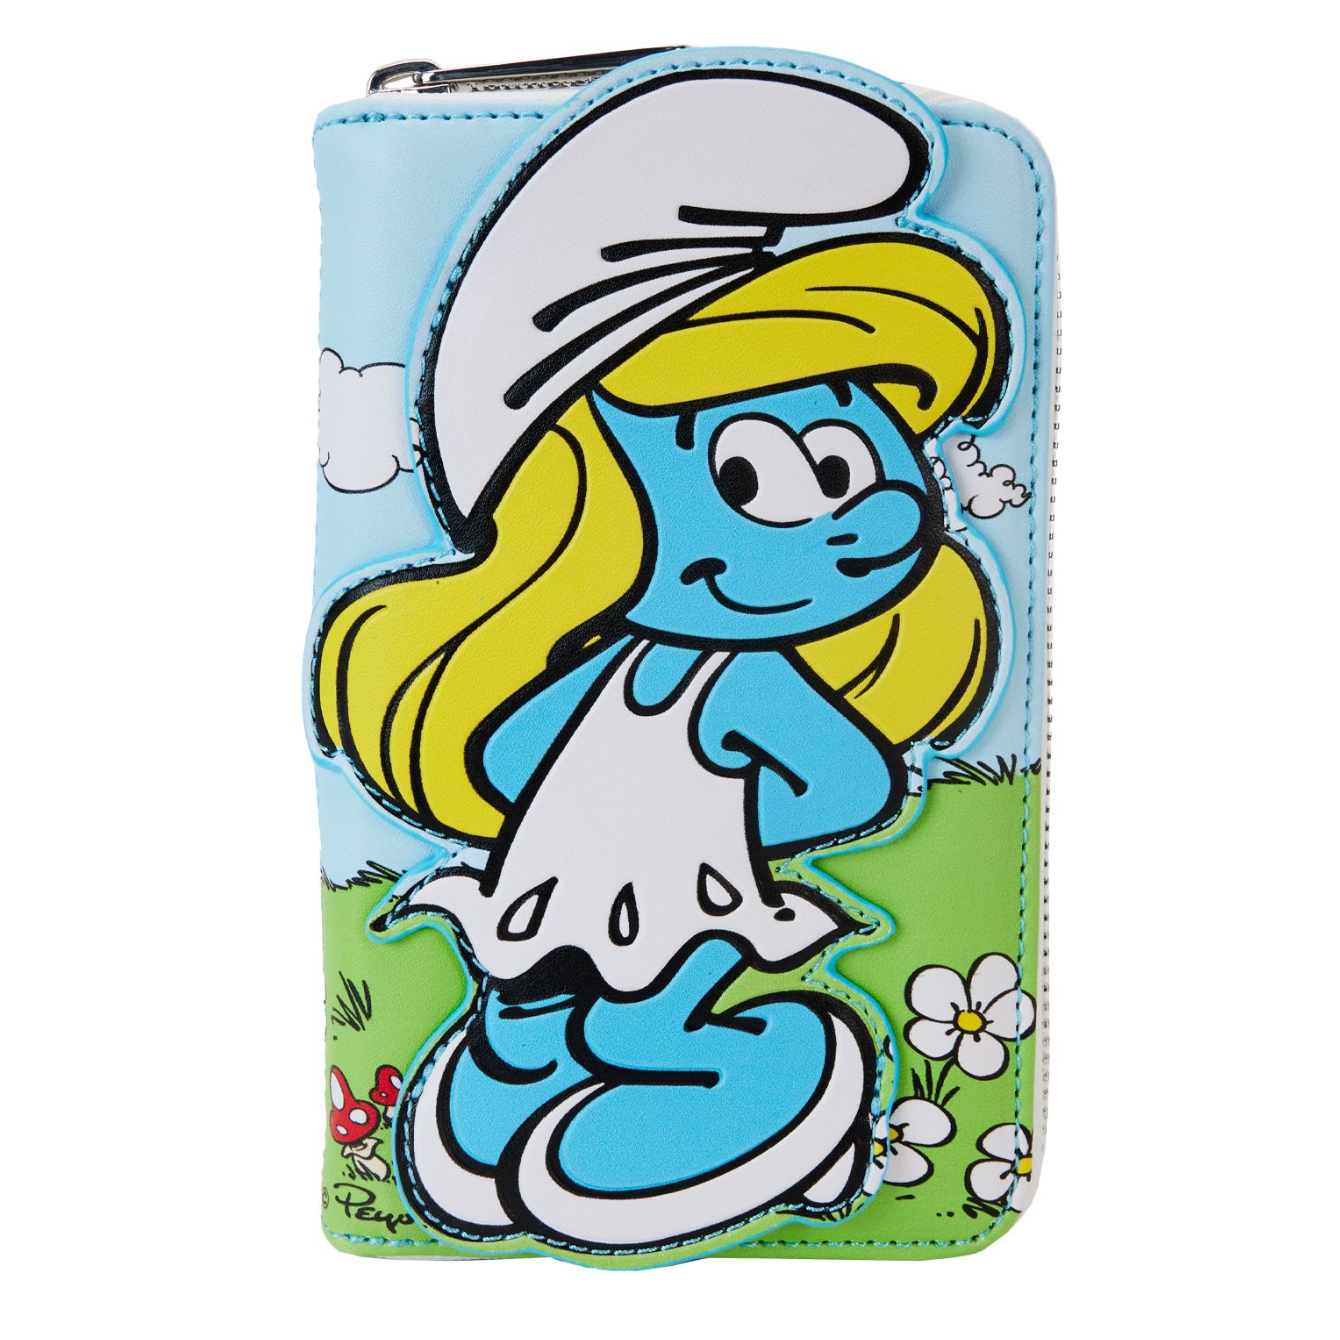 Smurfs Smurfette Cosplay Zip Wallet